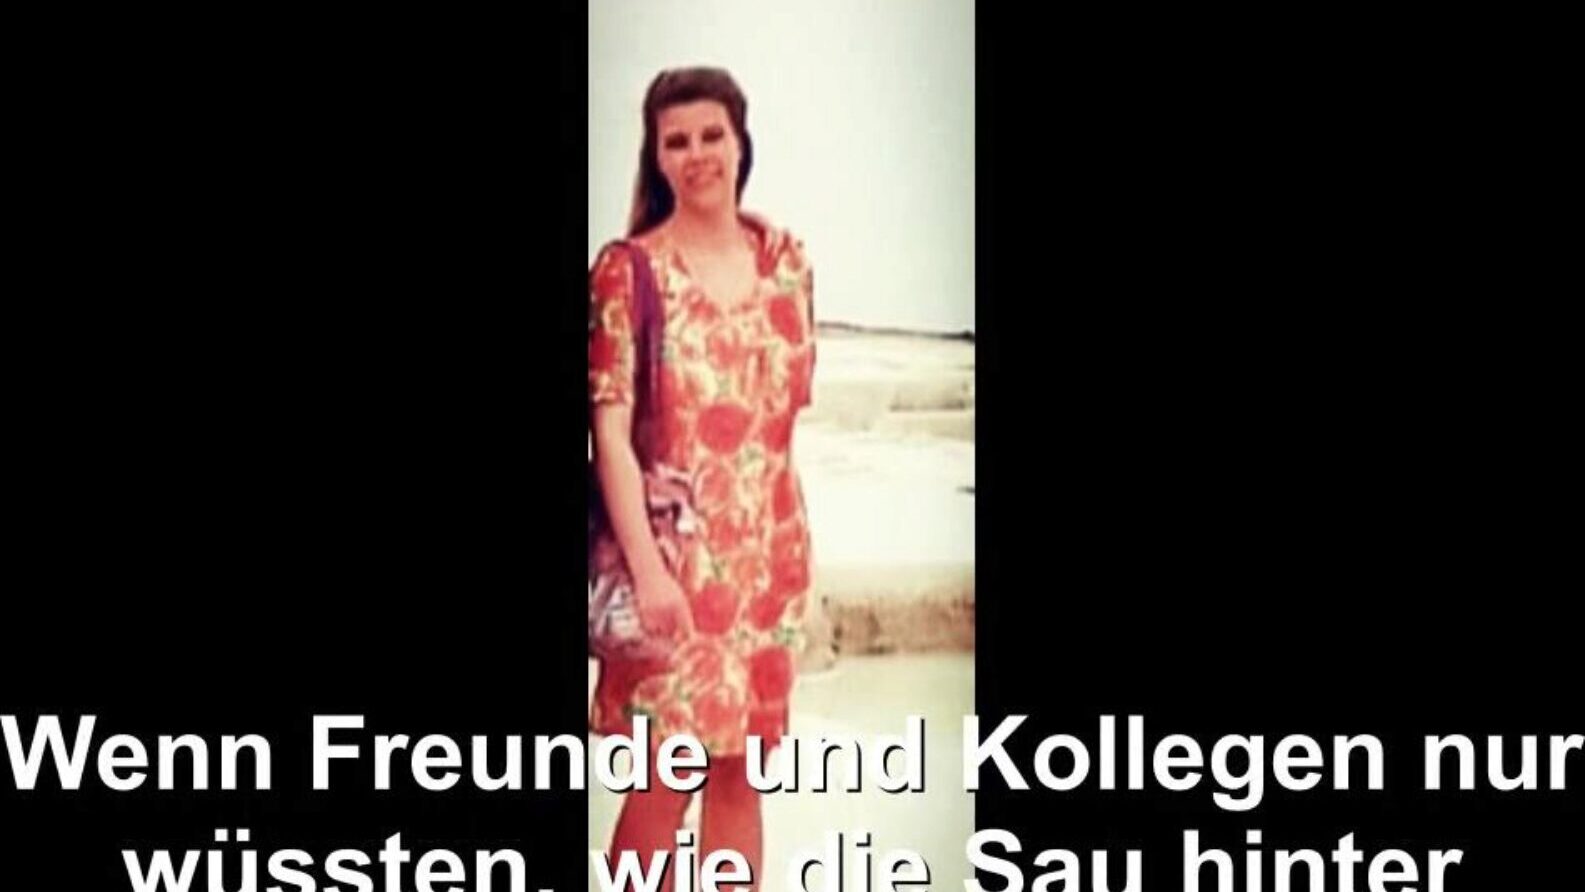 ドイツの主婦が露出した、無料のチューブドイツのhdポルノbd時計ドイツの主婦がxhamsterで映画のシーンを公開、無料のチューブがたくさんある最大のhdラブメイキングチューブのウェブサイトドイツのドイツの妻と自家製のポルノ映画のシーン